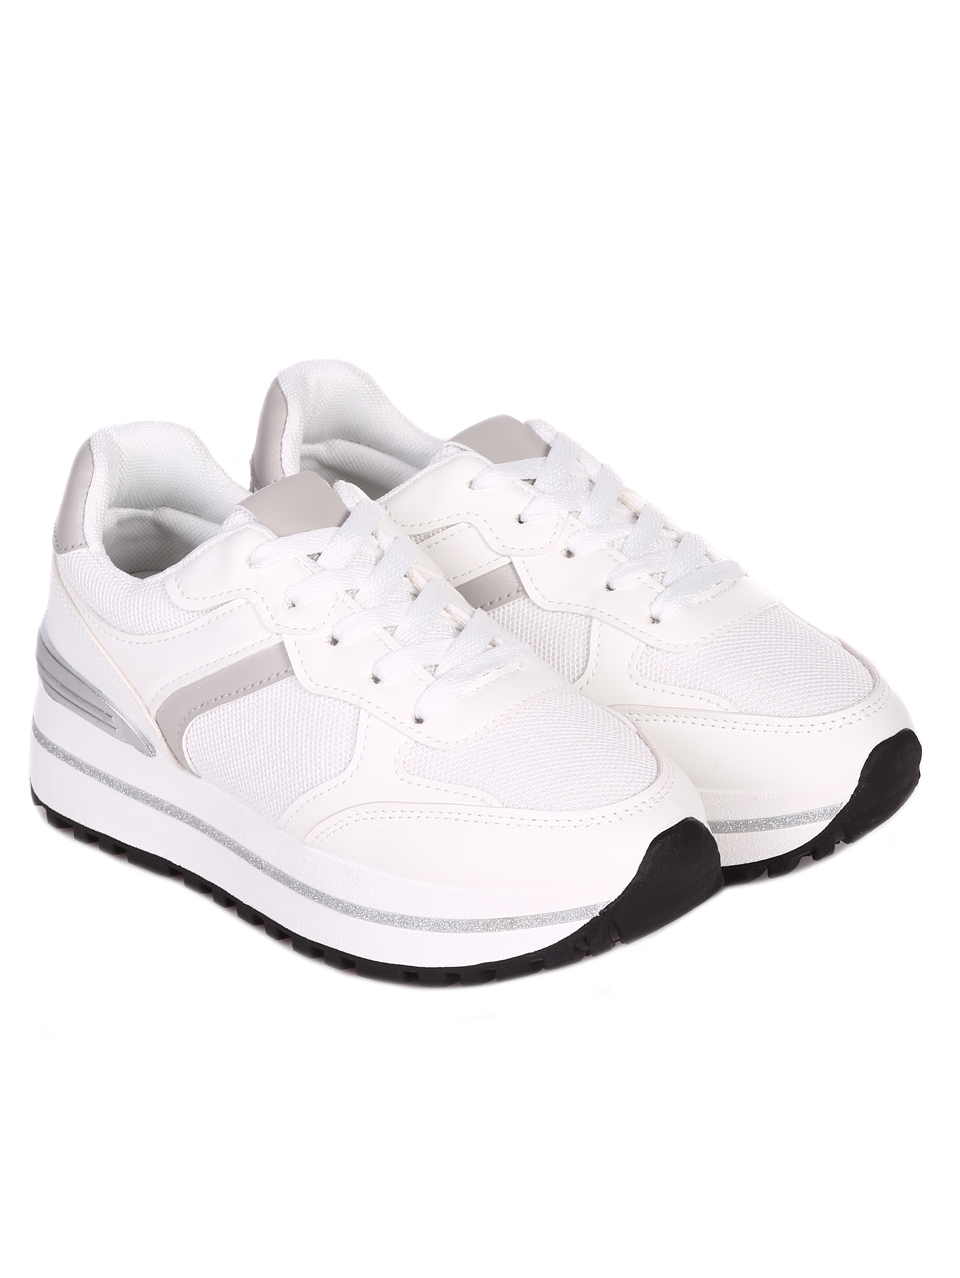 Ежедневни дамски комфортни обувки в бяло 3U-23062 white